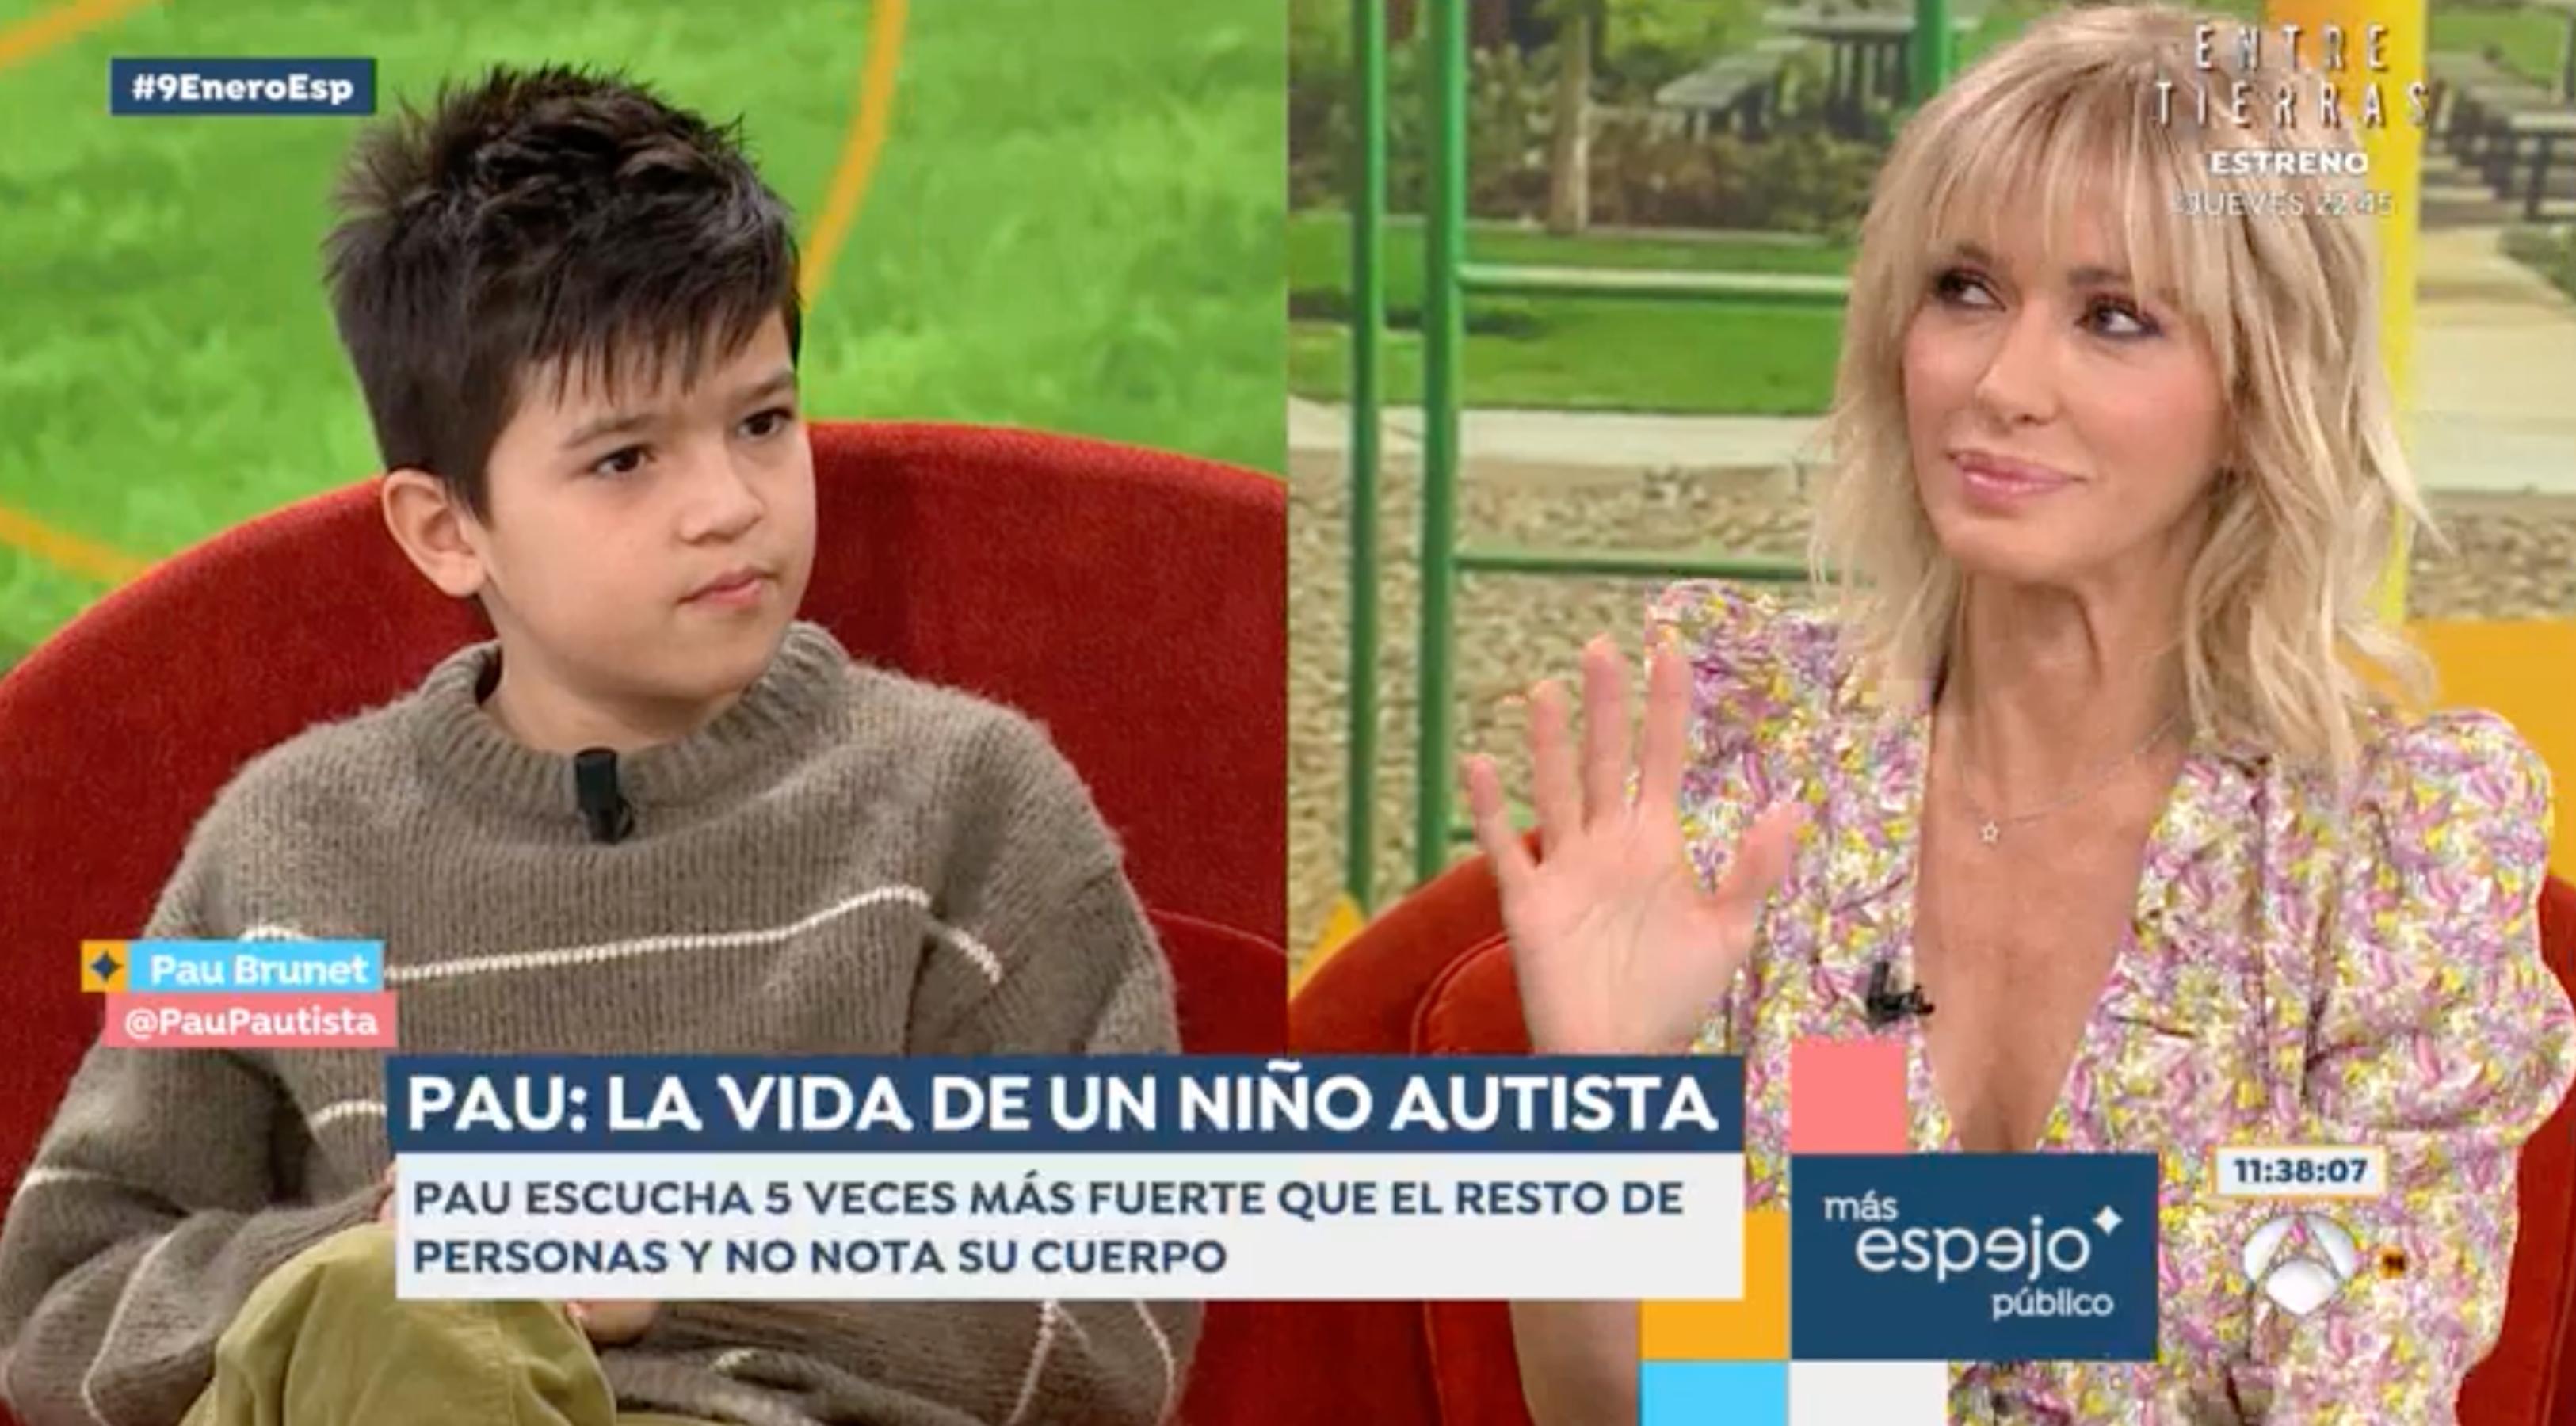 La lliçó d'un nen autista a Susanna Griso durant 'Espejo Público': "Tienes toda la razón"